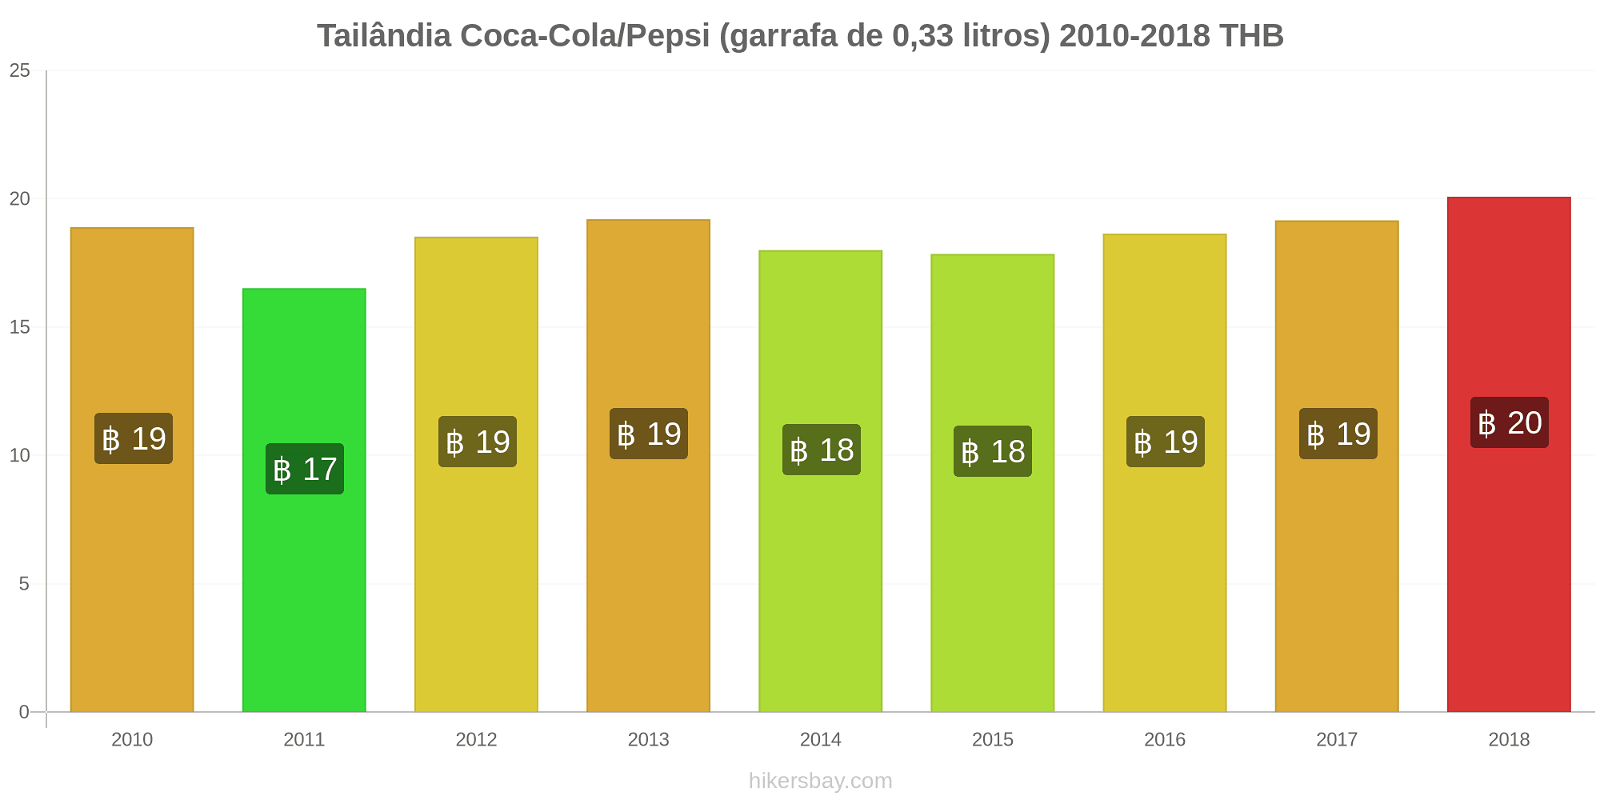 Tailândia mudanças de preços Coca-Cola/Pepsi (garrafa de 0.33 litros) hikersbay.com